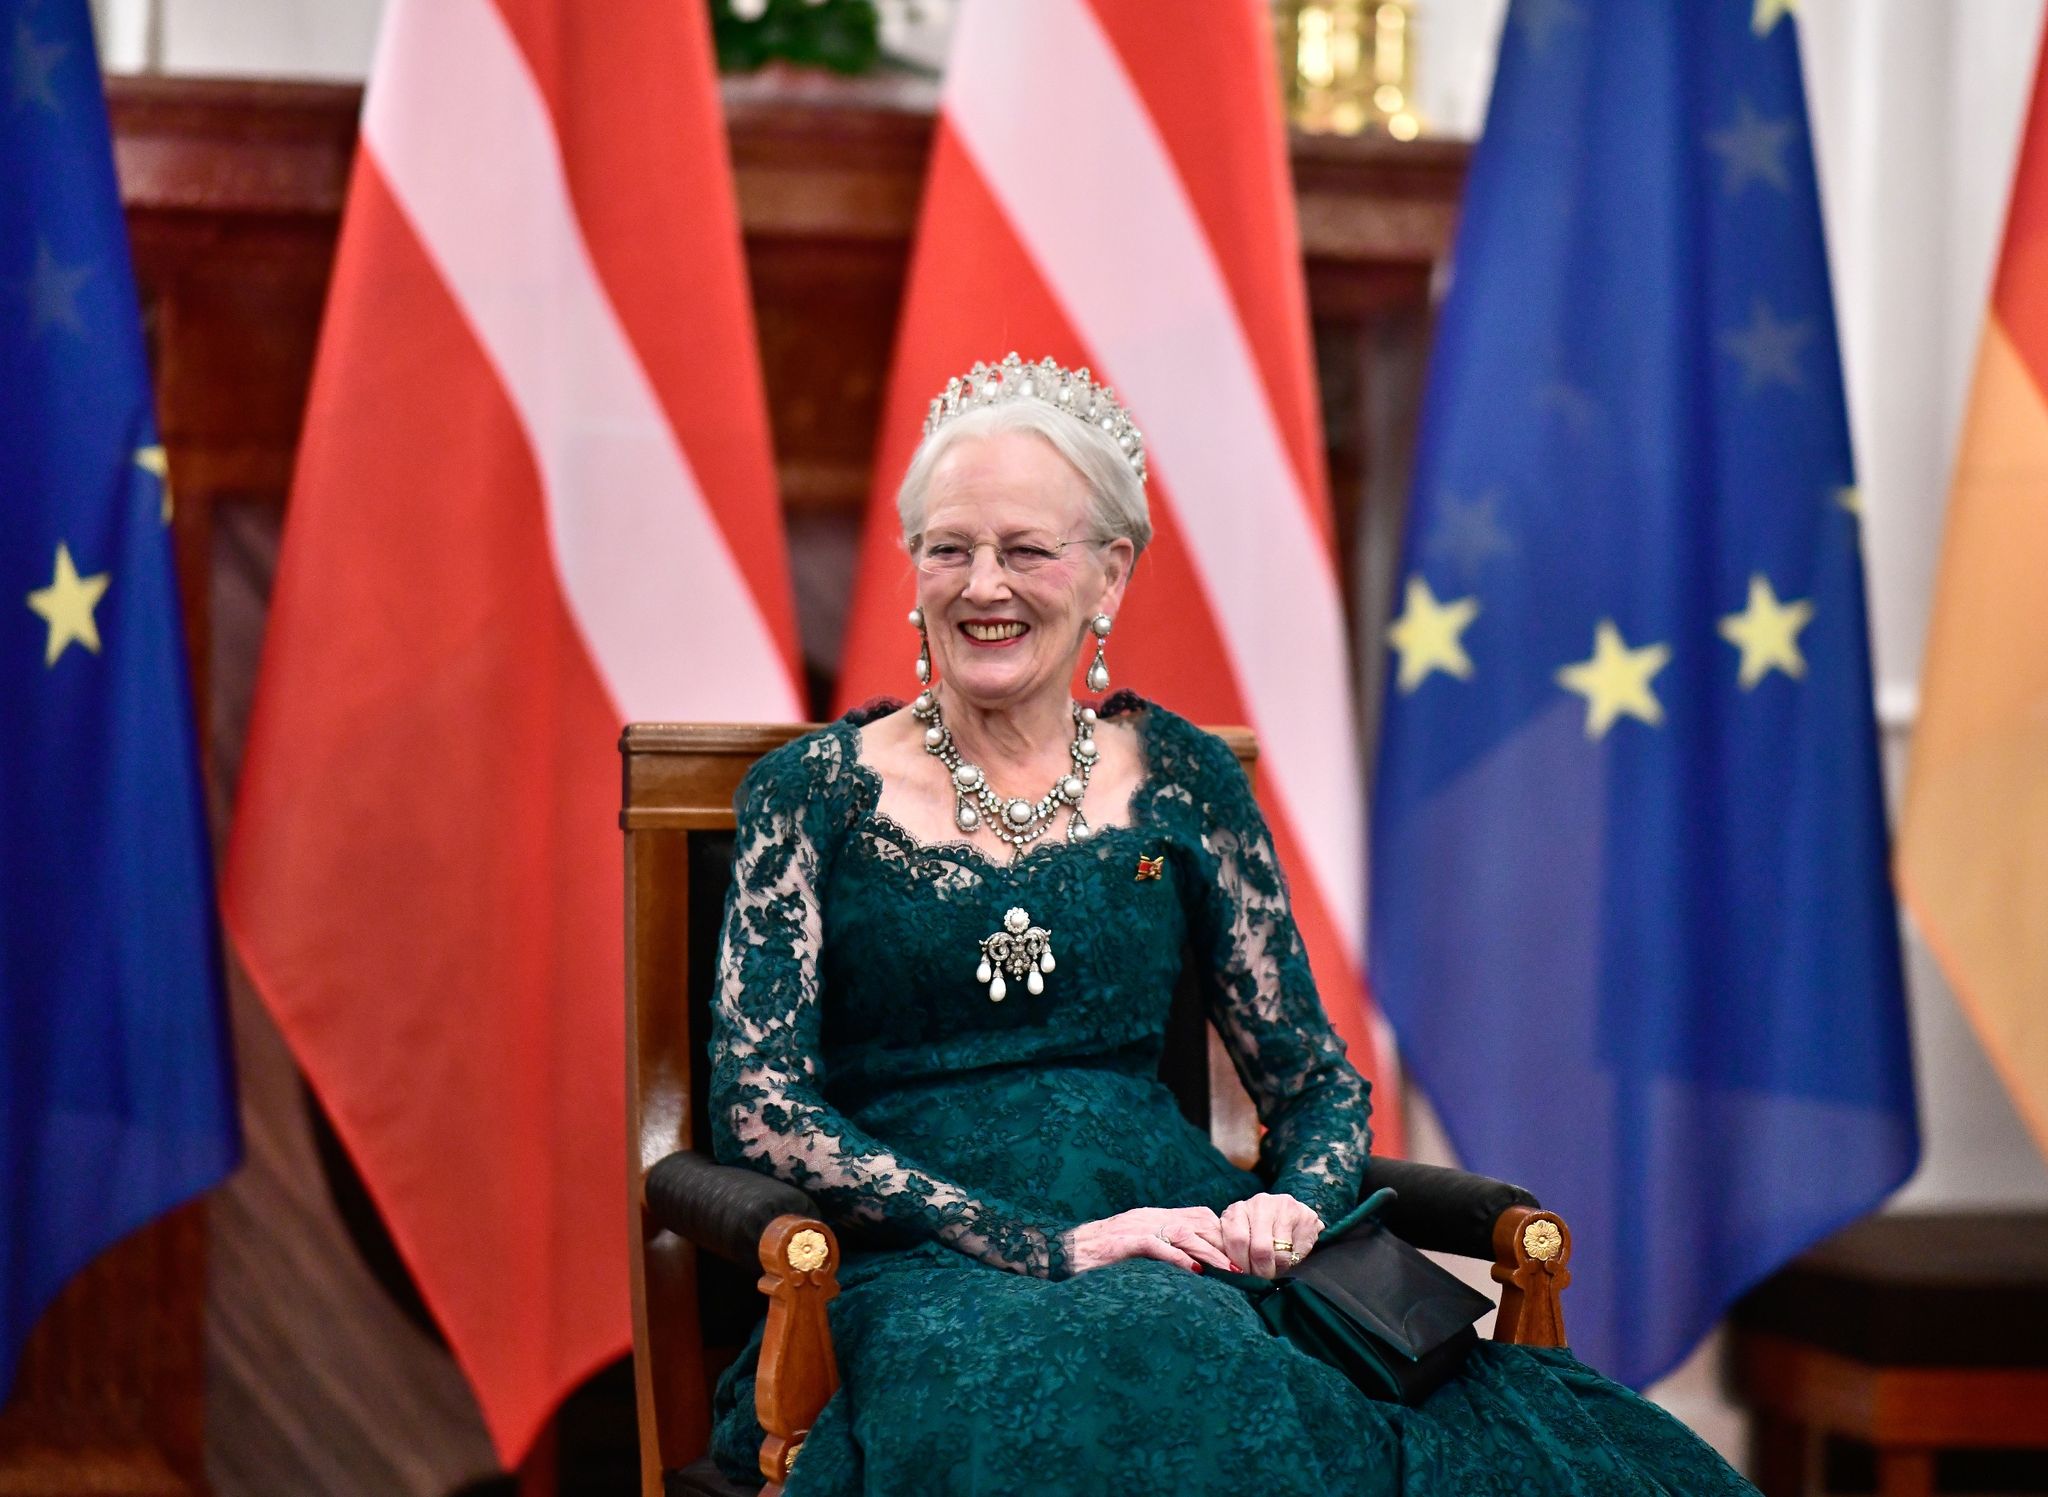 Königin Margrethe II. von Dänemark feiert ihr 50. Thronjubiläum. (© Fabian Sommer/dpa)